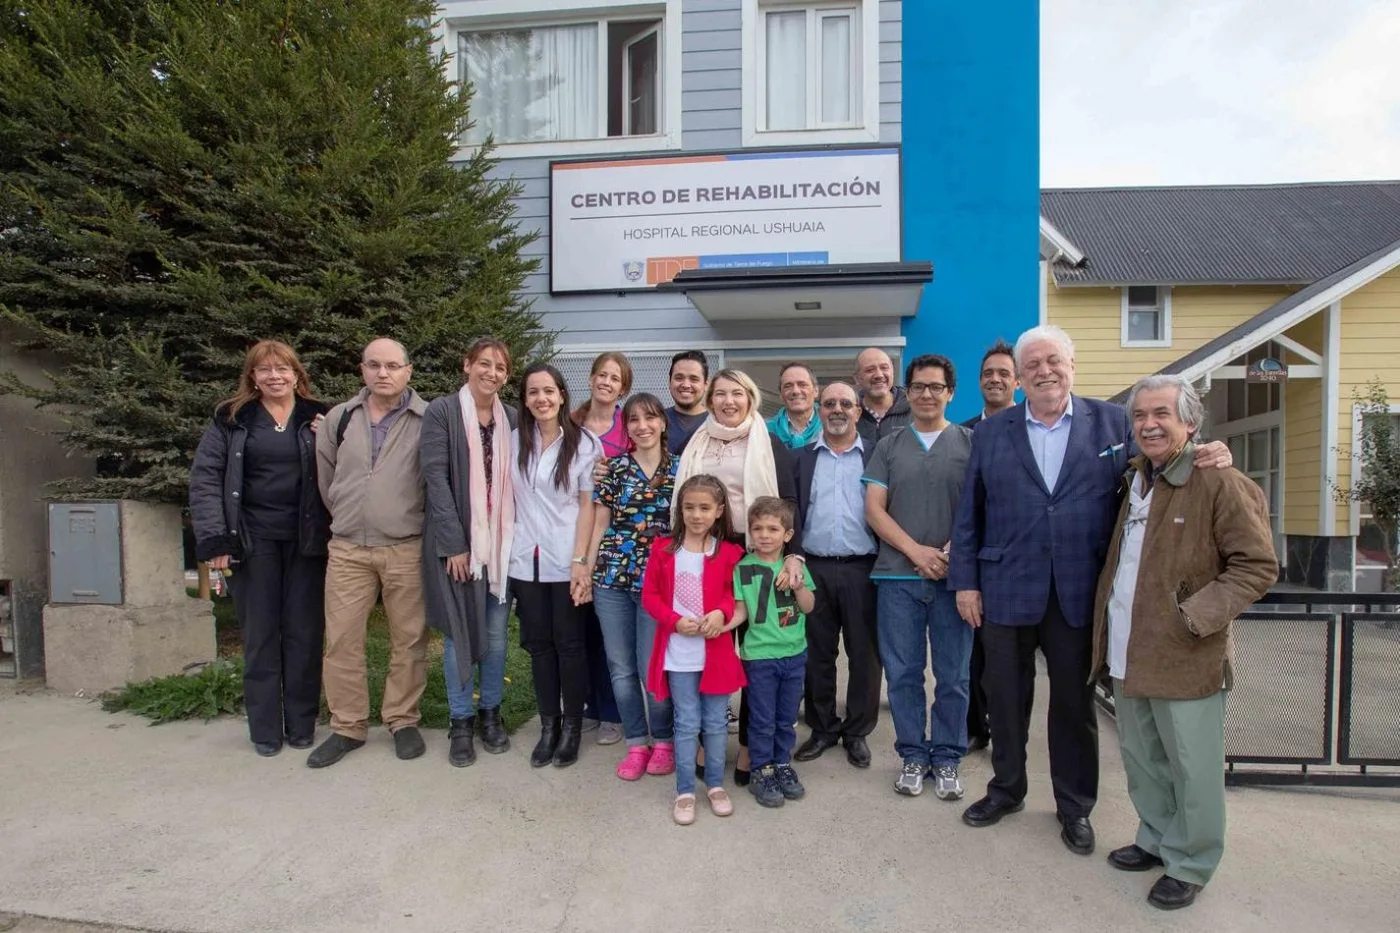 La gobernadora Rosana Bertone inauguró este jueves los consultorios del Centro de Rehabilitación del Hospital Regional Ushuaia